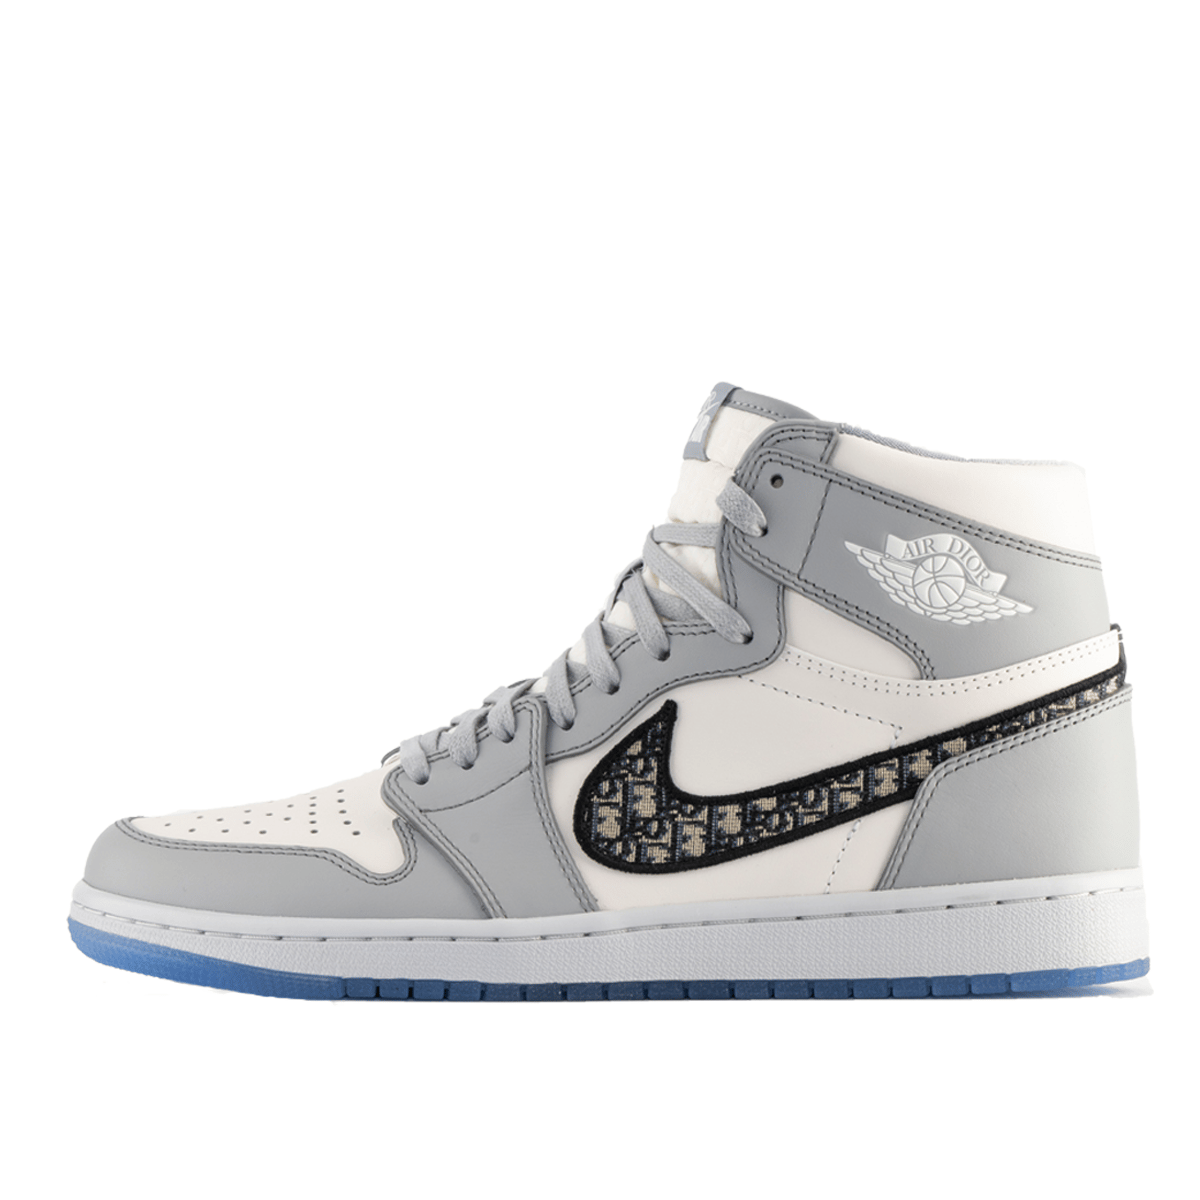 Air Jordan Retro High Sneakers Shoes-41 / Grey